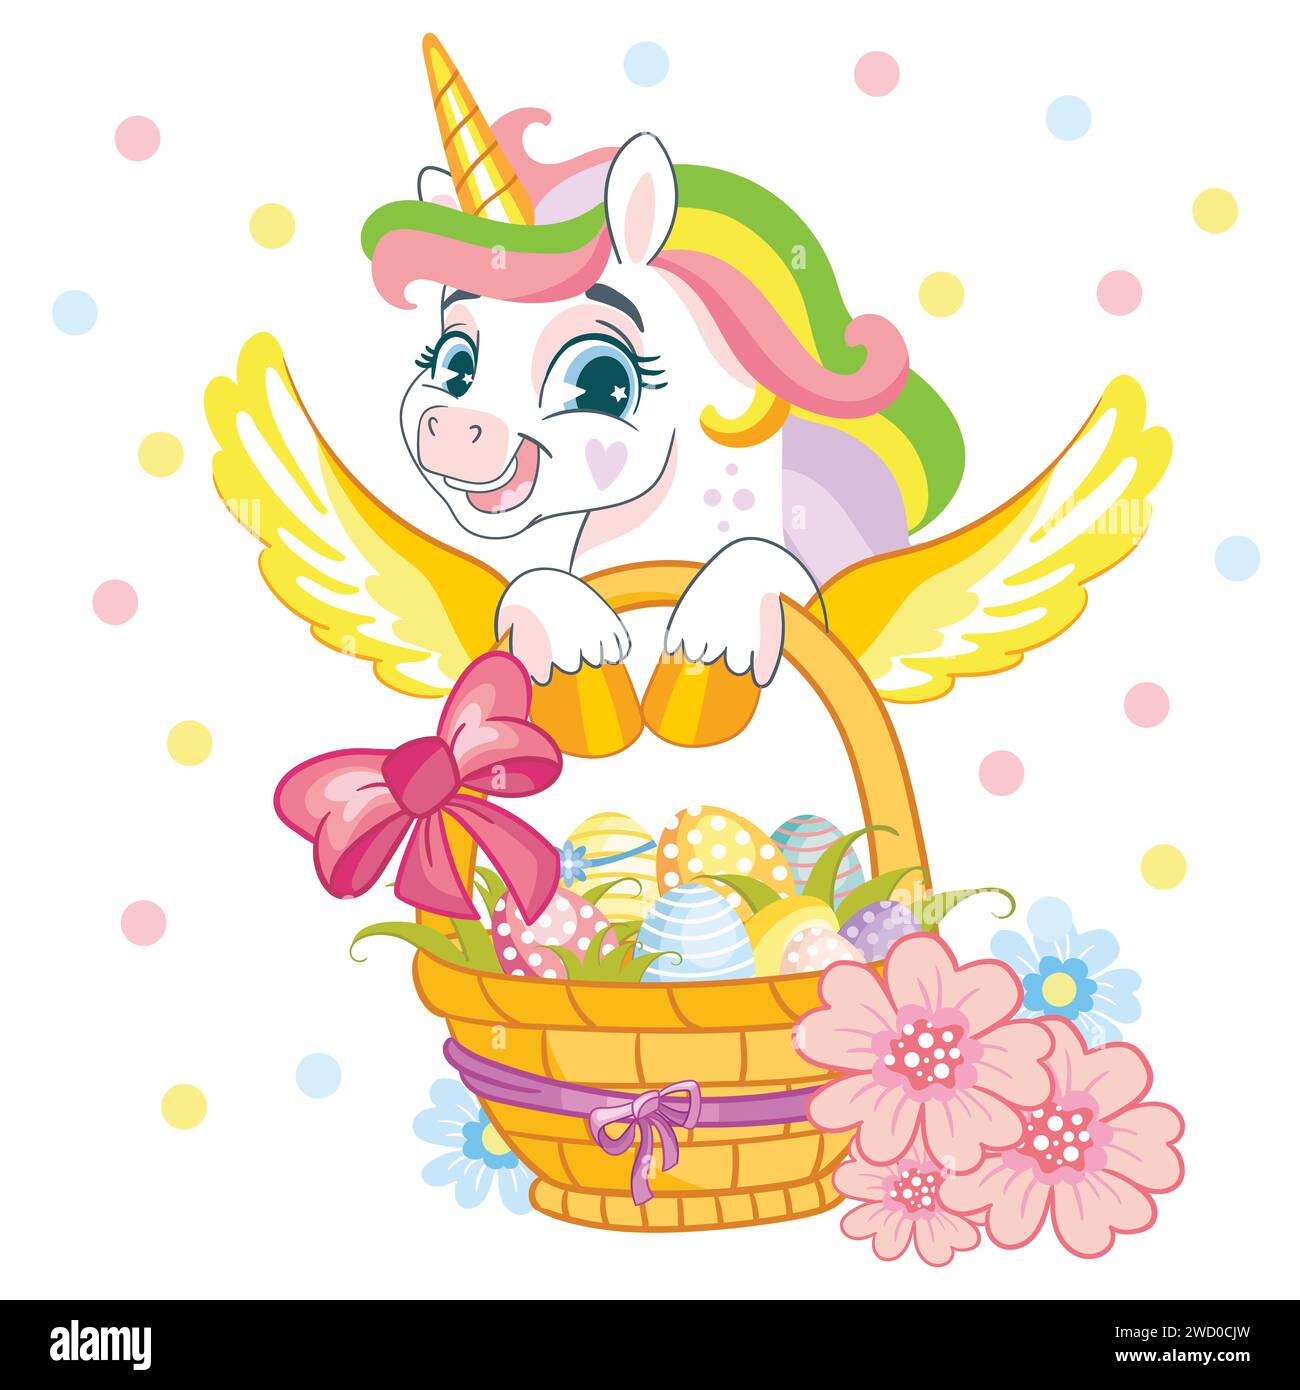 Simpatico unicorno cartoni animati con criniera arcobaleno e coda isolata su sfondo bianco. Carattere unicorno. Illustrazione vettoriale dei colori Illustrazione Vettoriale